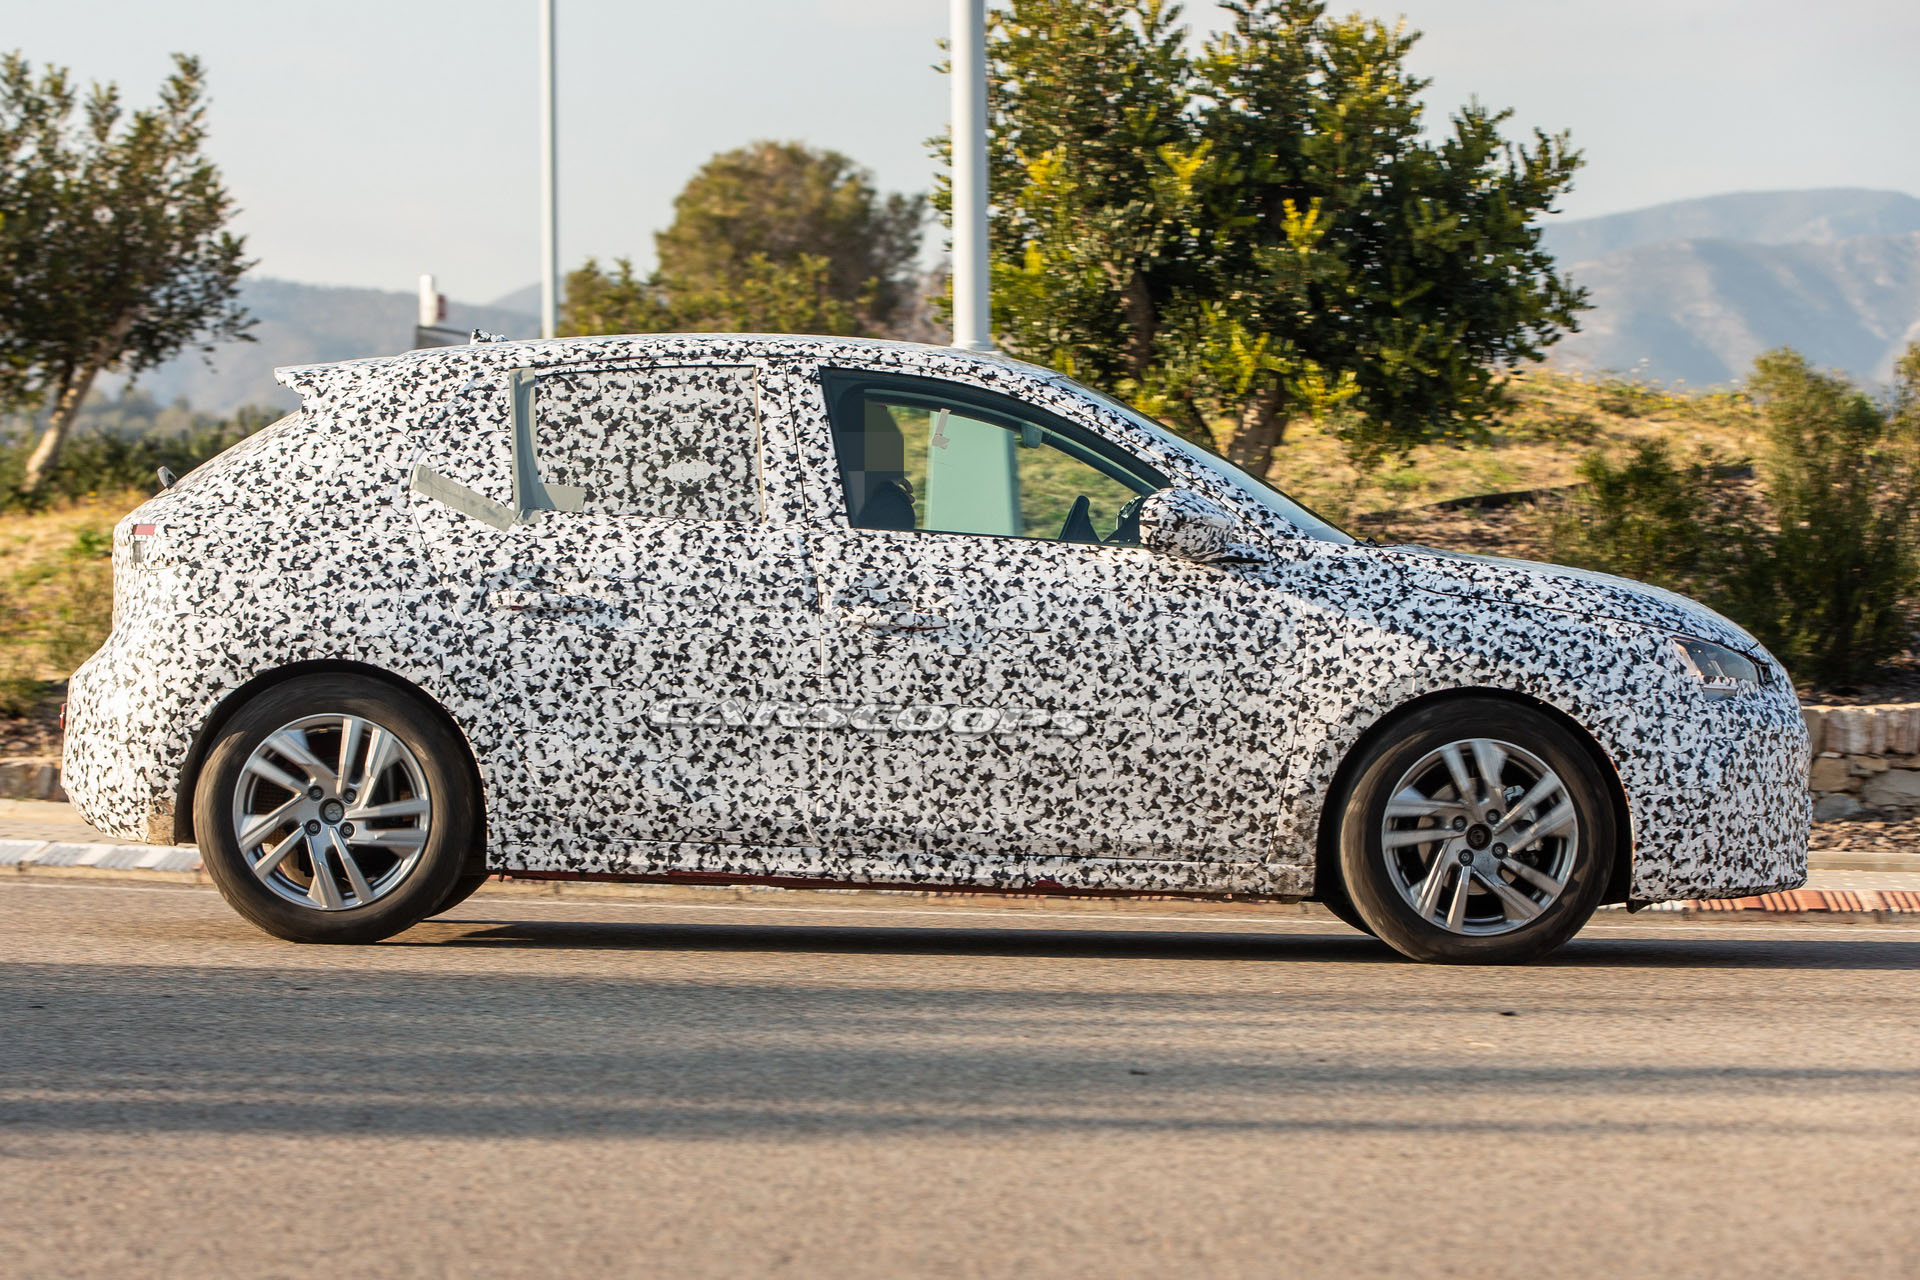 Yeni Opel Corsa, selefinden yüzden 10 daha hafif olacak